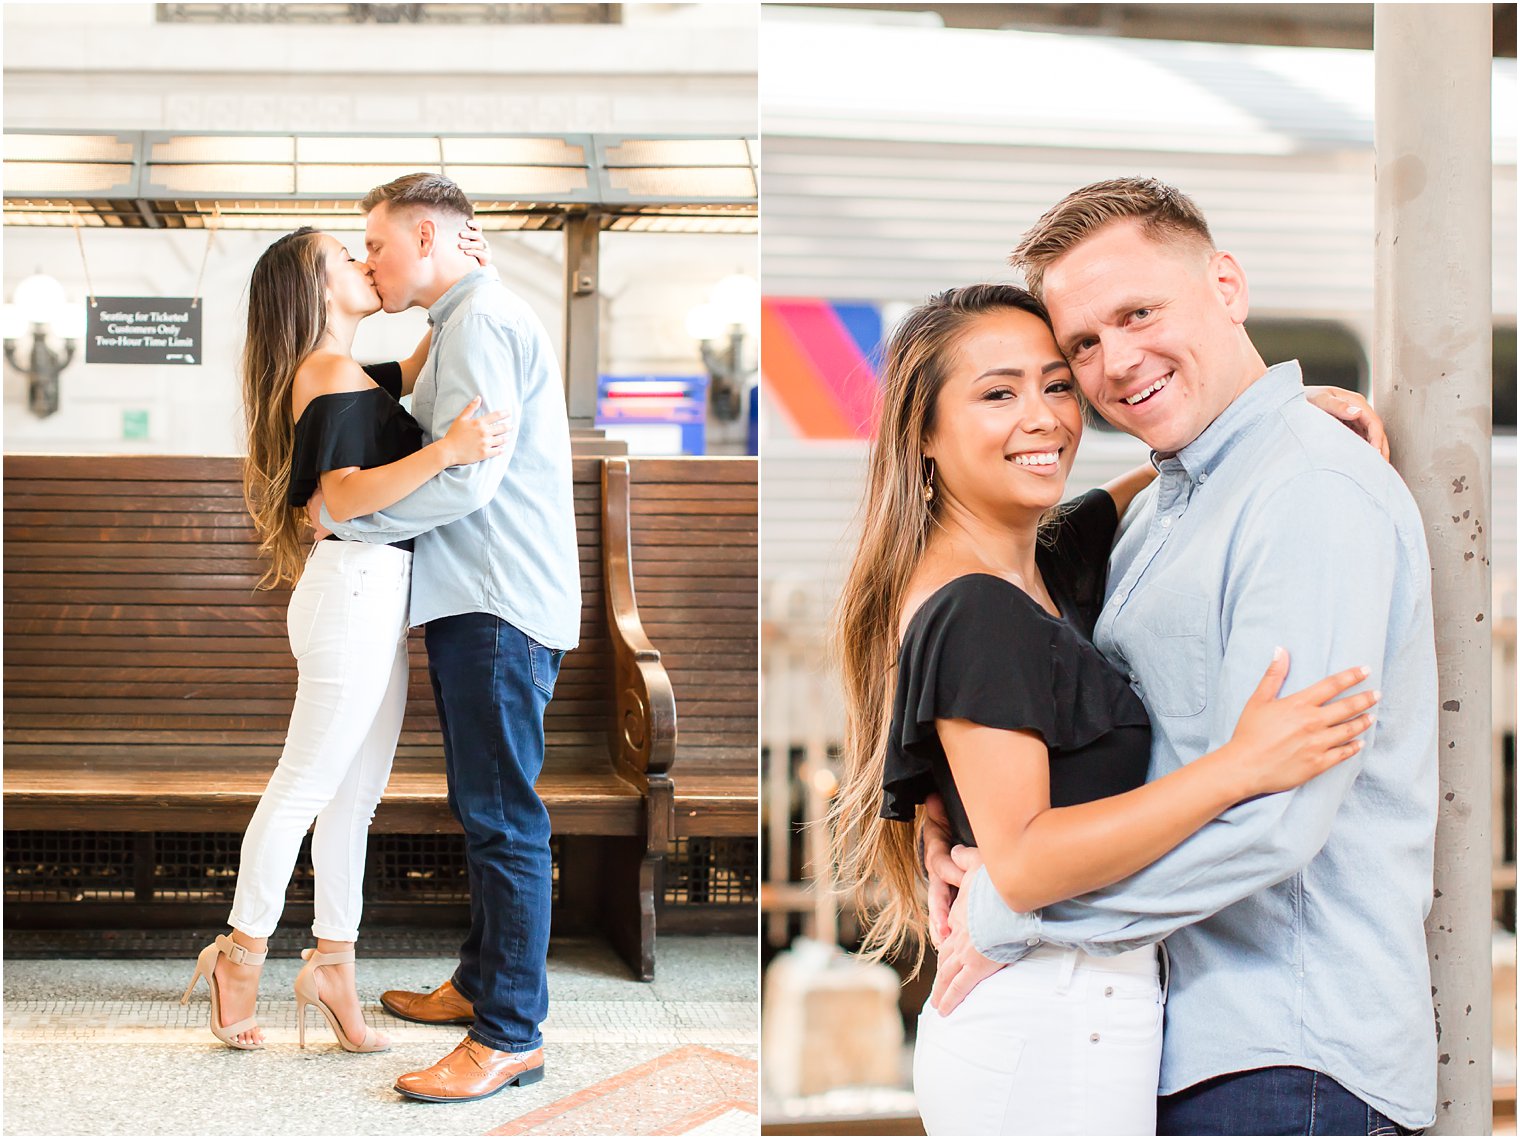 Engagement photos at Lackawanna train station